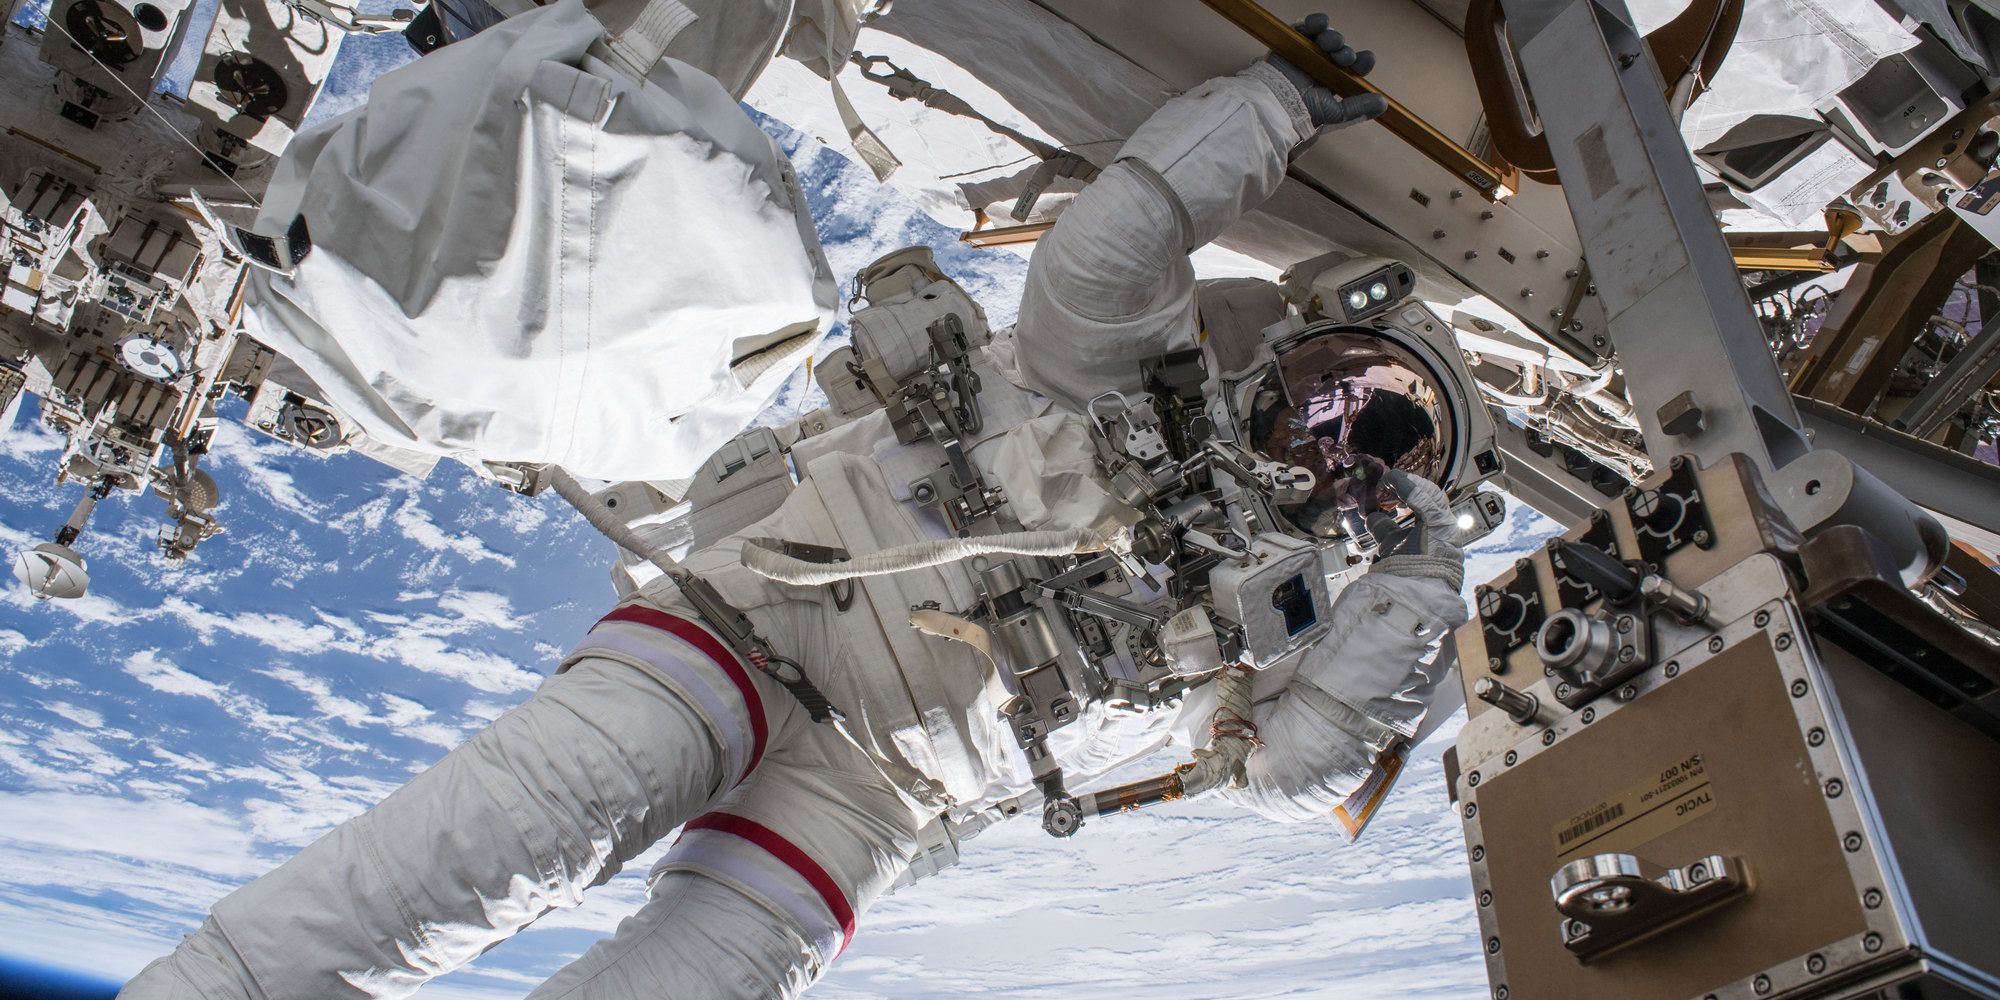 NASA spacewalk cancelled due to health issue